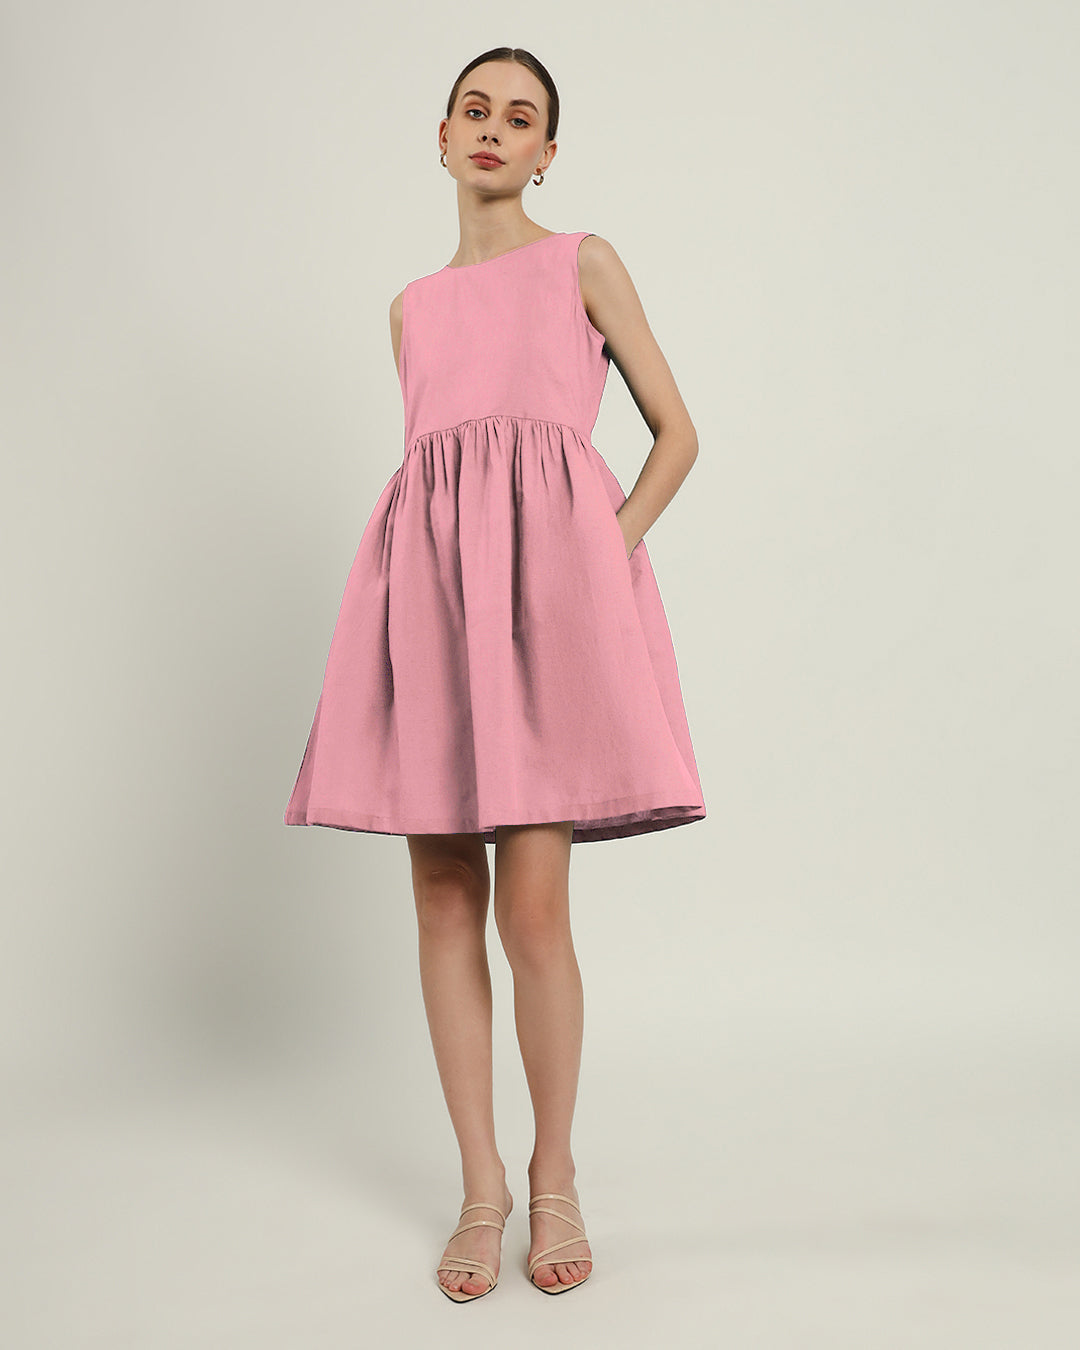 The Chania Fondant Pink Dress